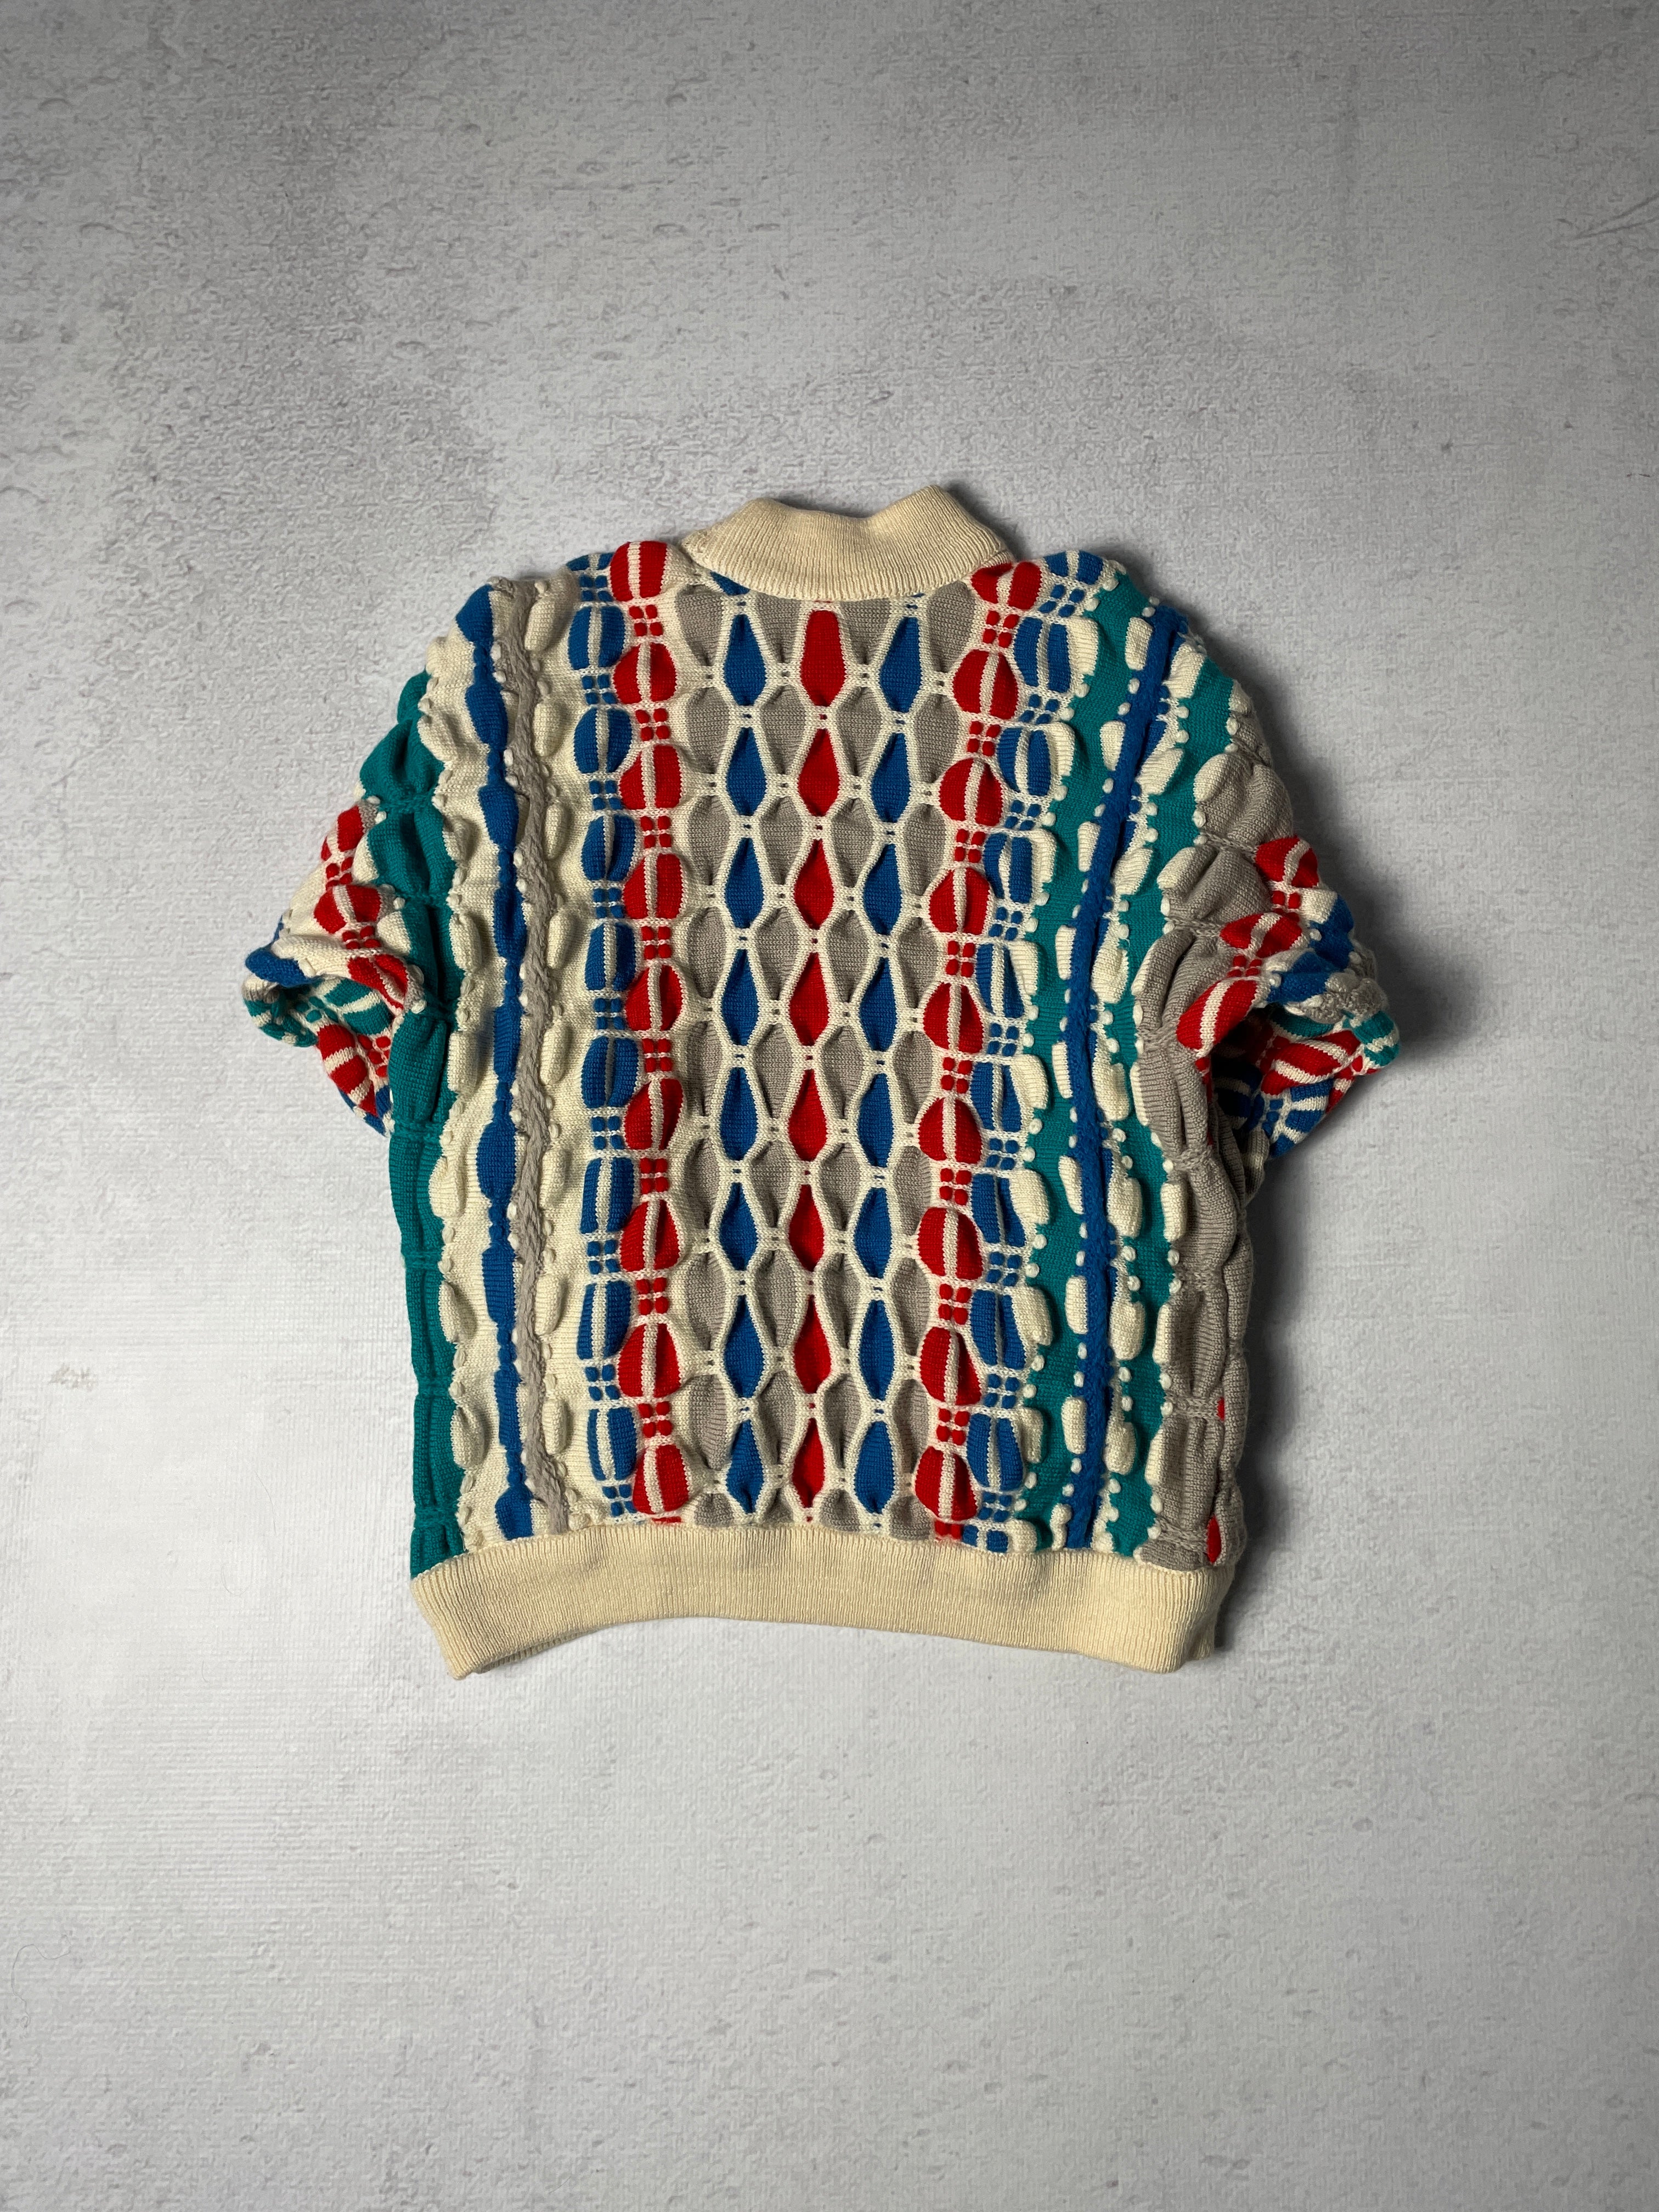 Vintage Coogi 3D Knitted Mockneck Sweater - Men's Small